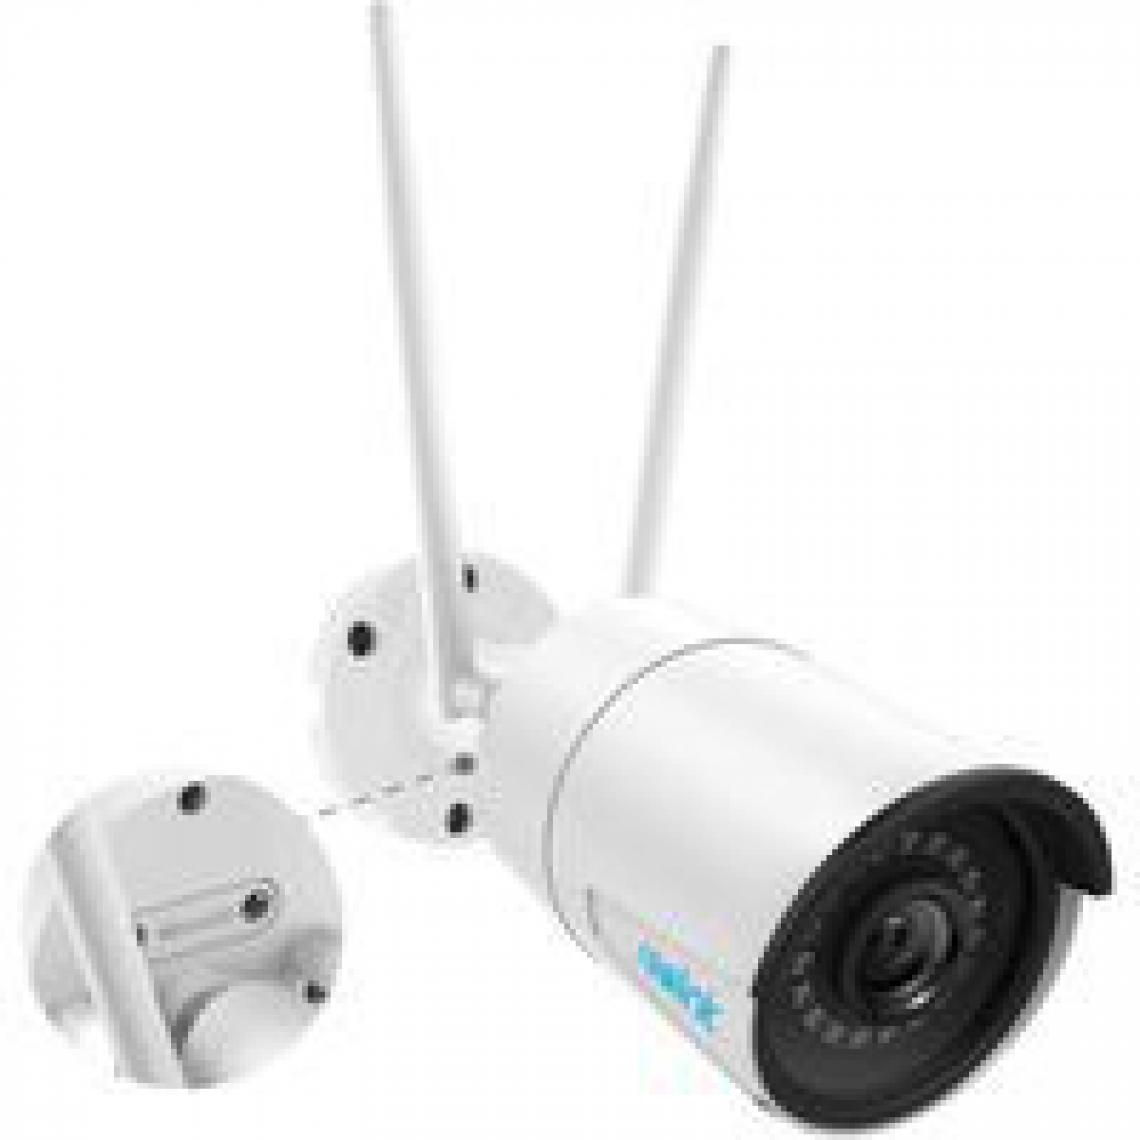 Reolink - Caméra Surveillance 4MP Extérieure - RLC-410W - WiFi Caméra IP Étanche Détection de Mouvement Vision Nocturne - Caméra de surveillance connectée